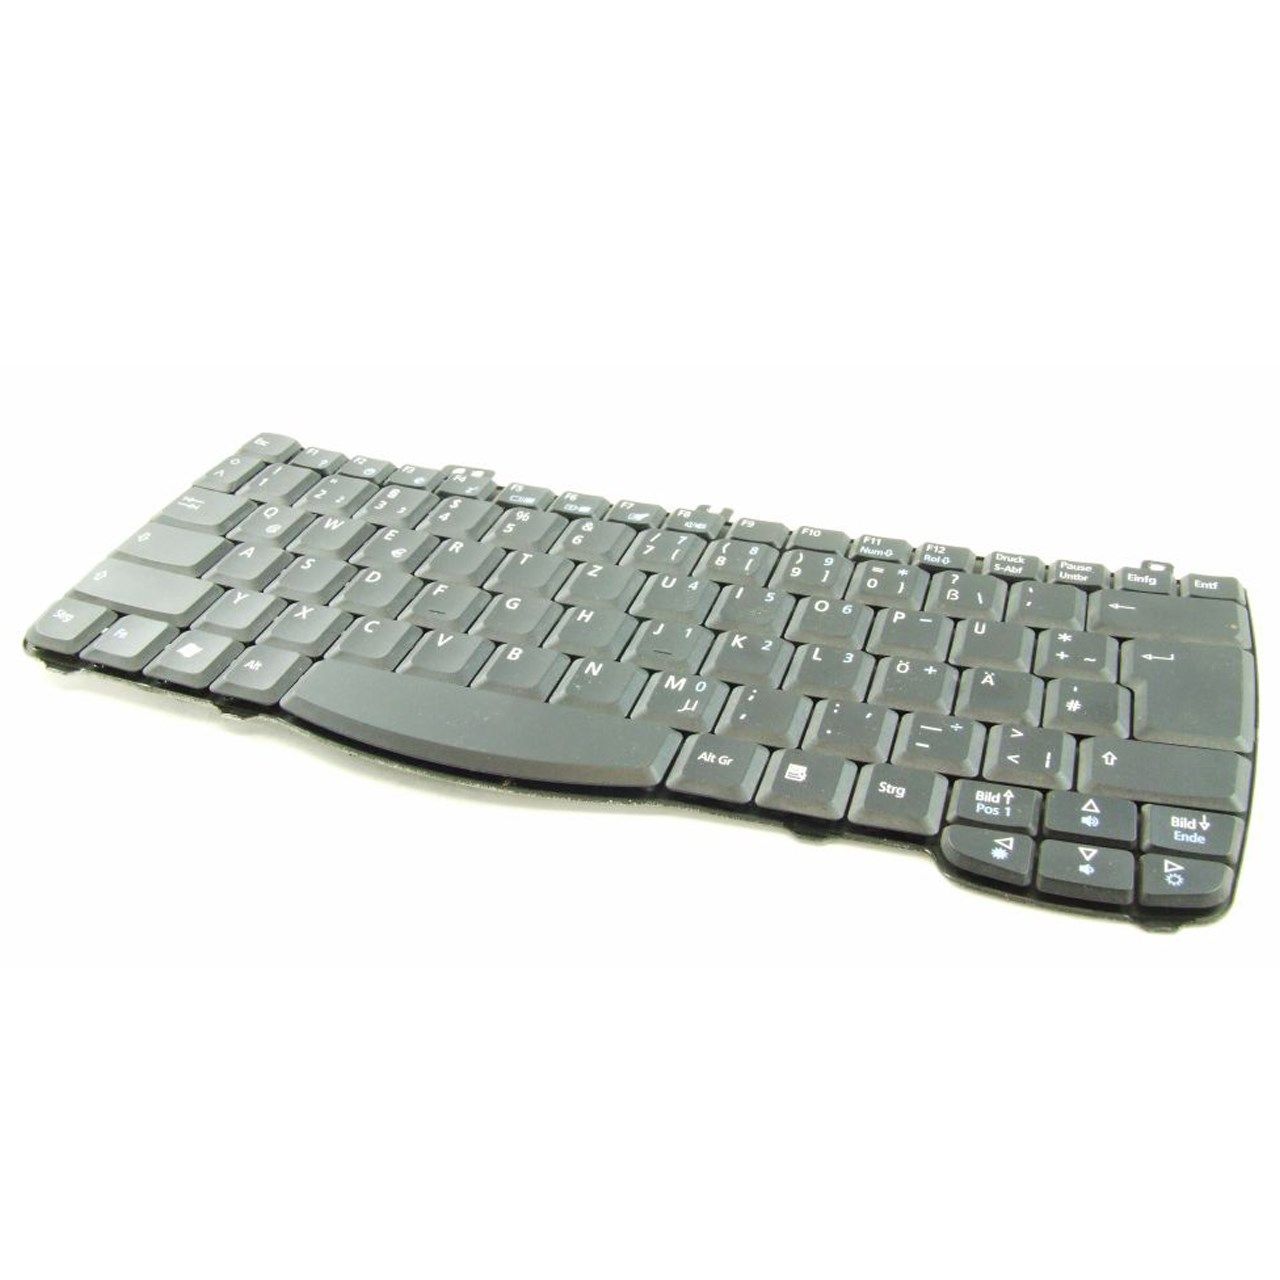 کیبورد لپ تاپ مدل ZI1S-ZG1S  مناسب برای لپ تاپ ایسر 650